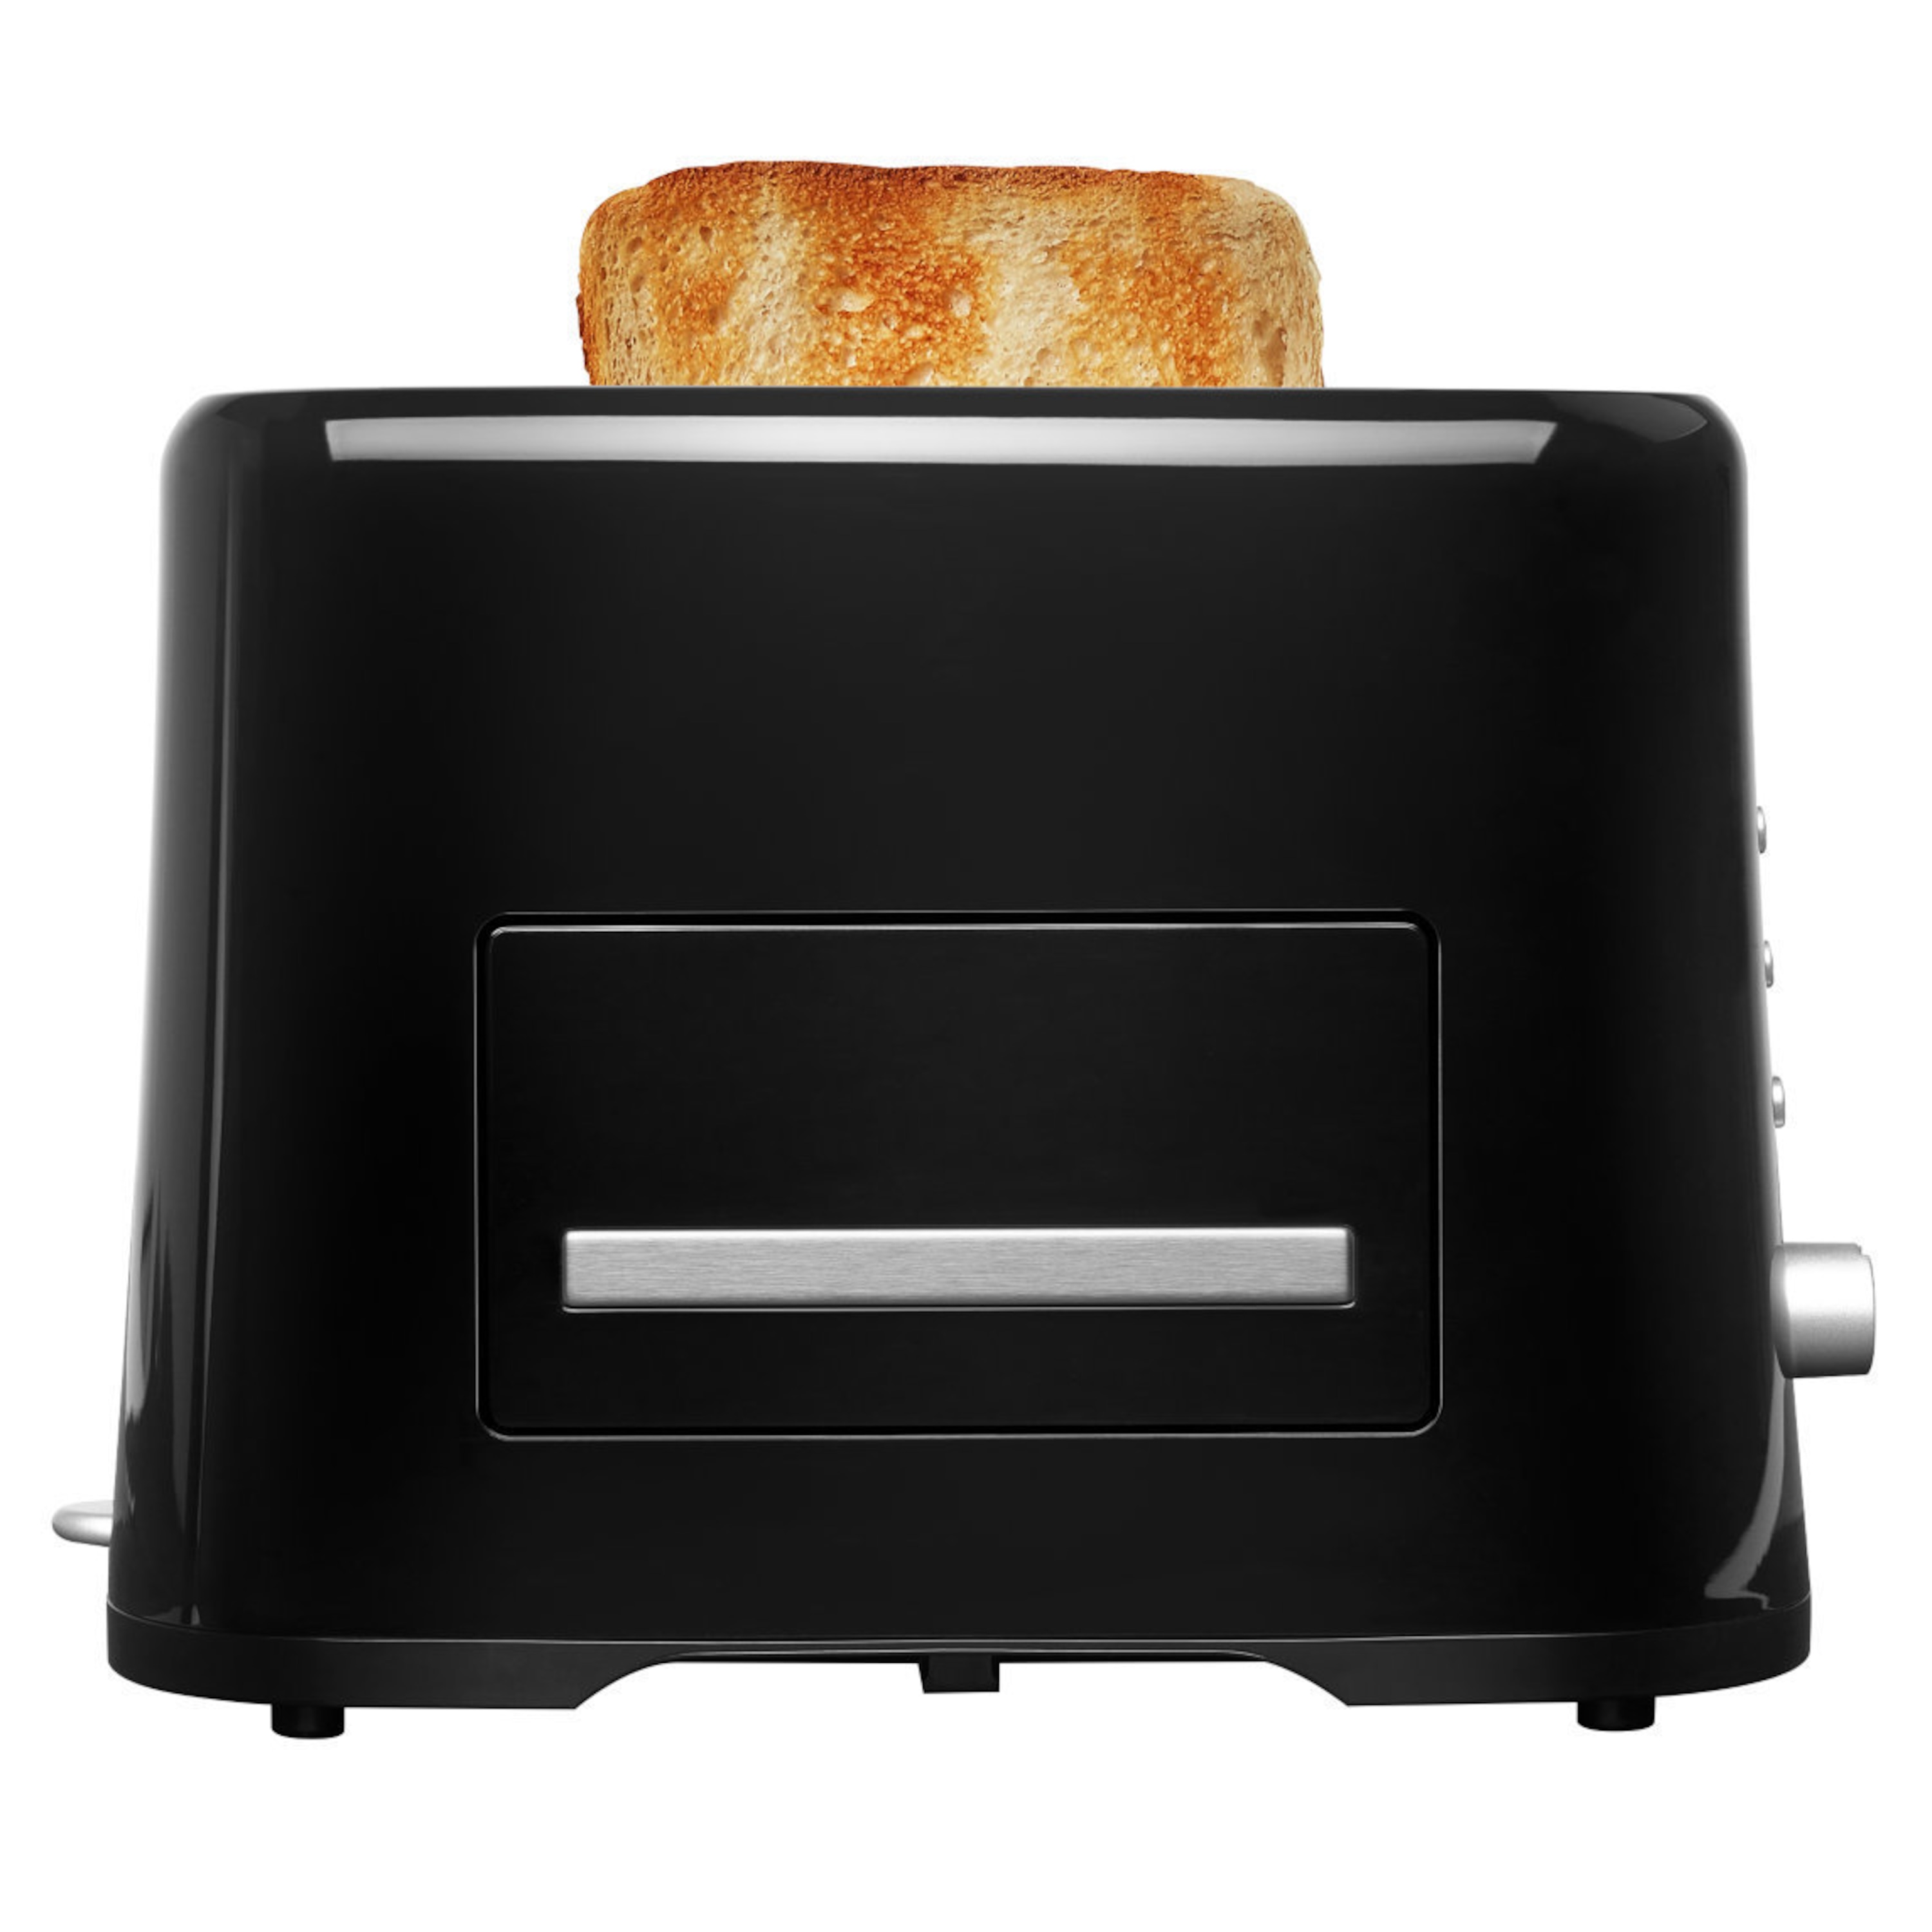 MEDION® Toaster MD 16734, 870 Watt Leistung, variable Temperatureinstellung, Aufwärm- und Auftaufunktion, Krümelblech